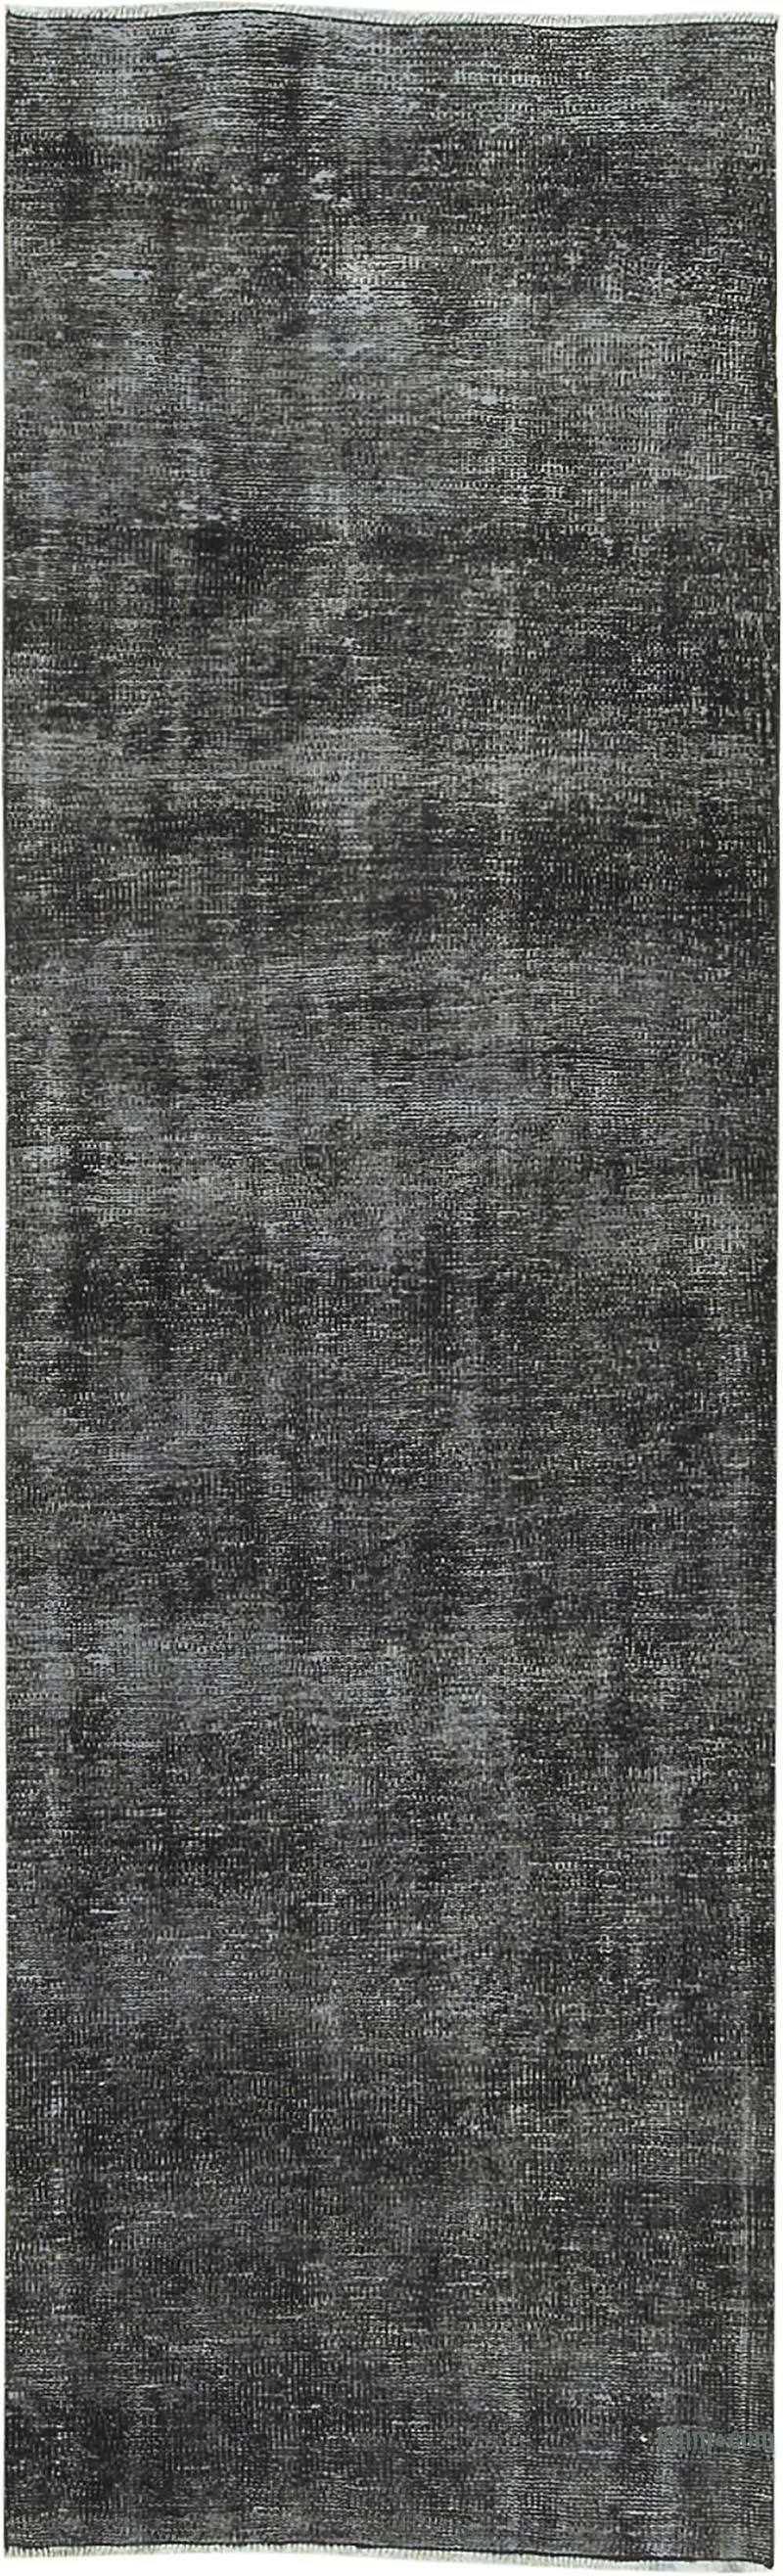 Siyah Boyalı El Dokuma Vintage Halı Yolluk - 81 cm x 263 cm - K0054580